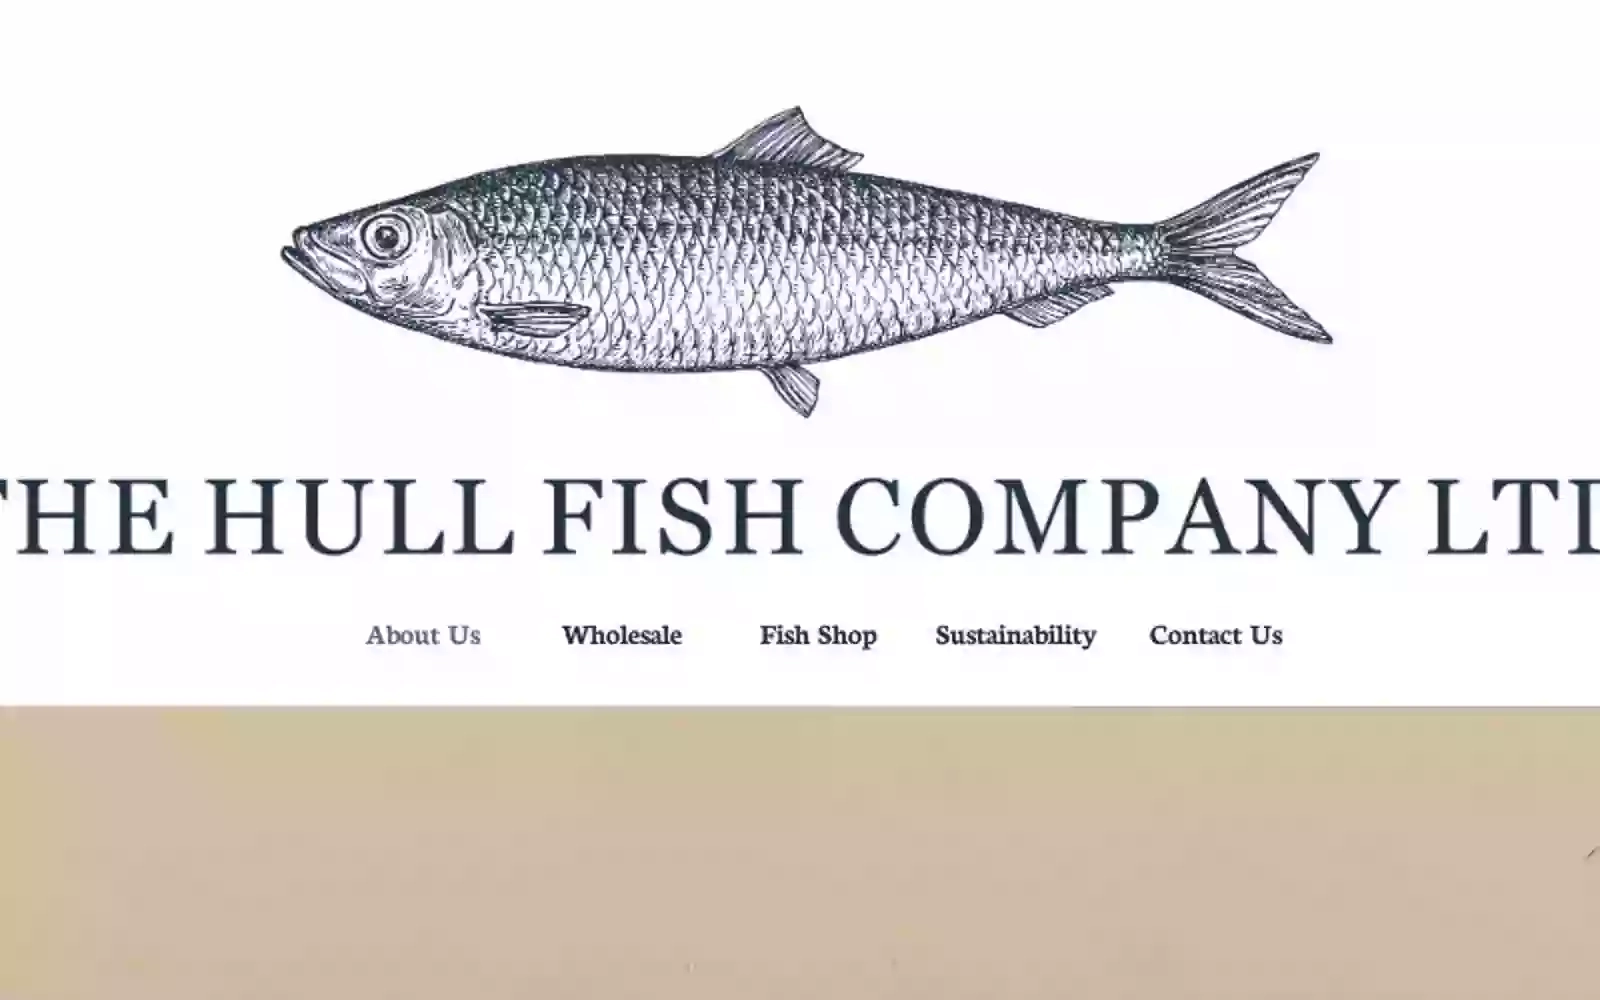 The Hull Fish Company Ltd.